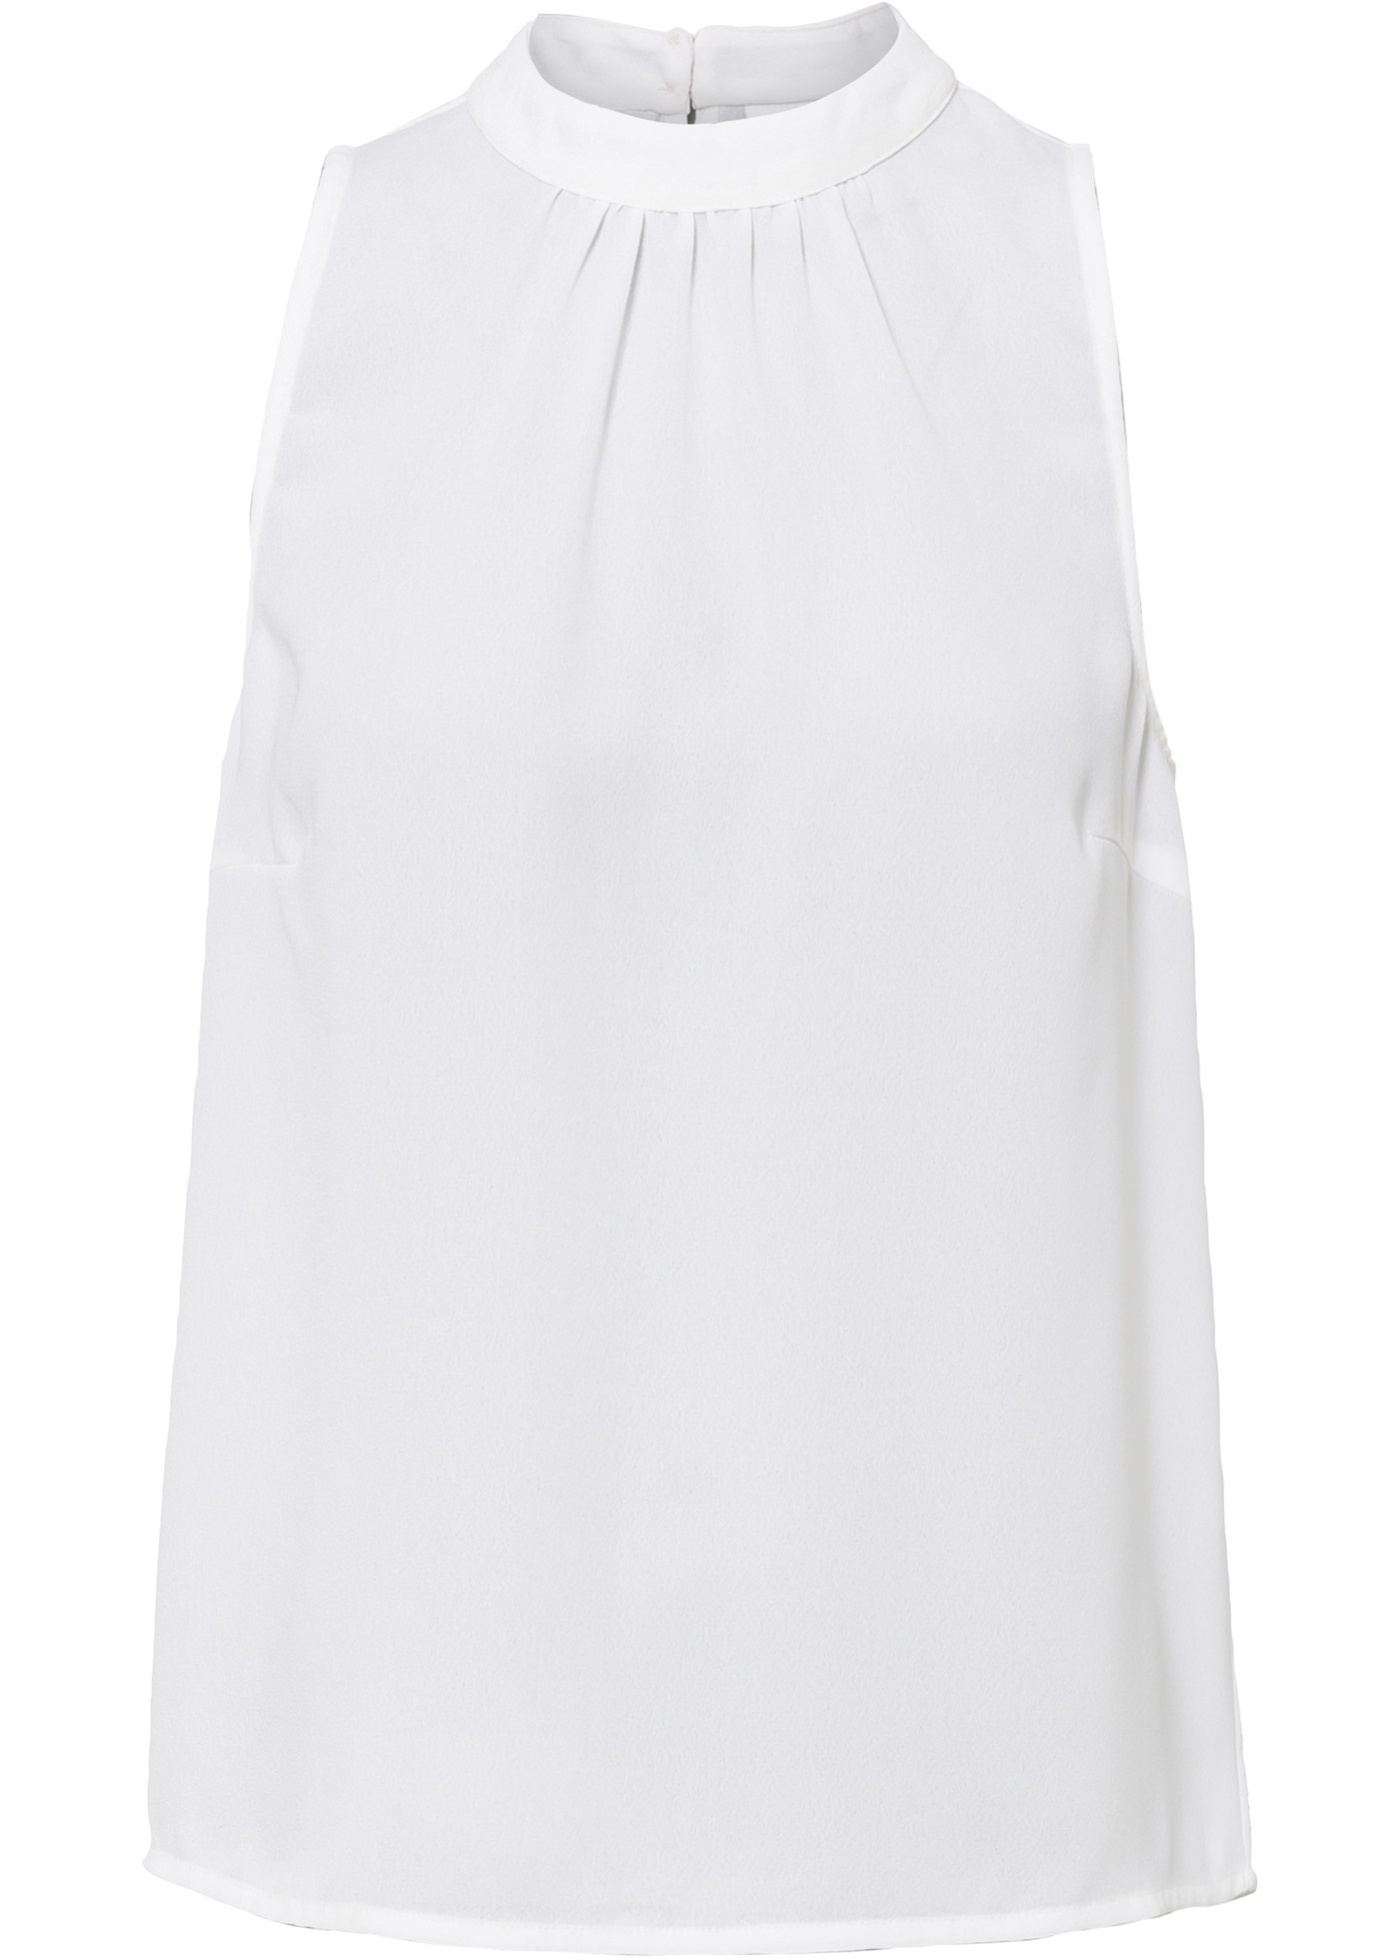 Moderne Bluse mit Stehkragen (95769481) in weiß